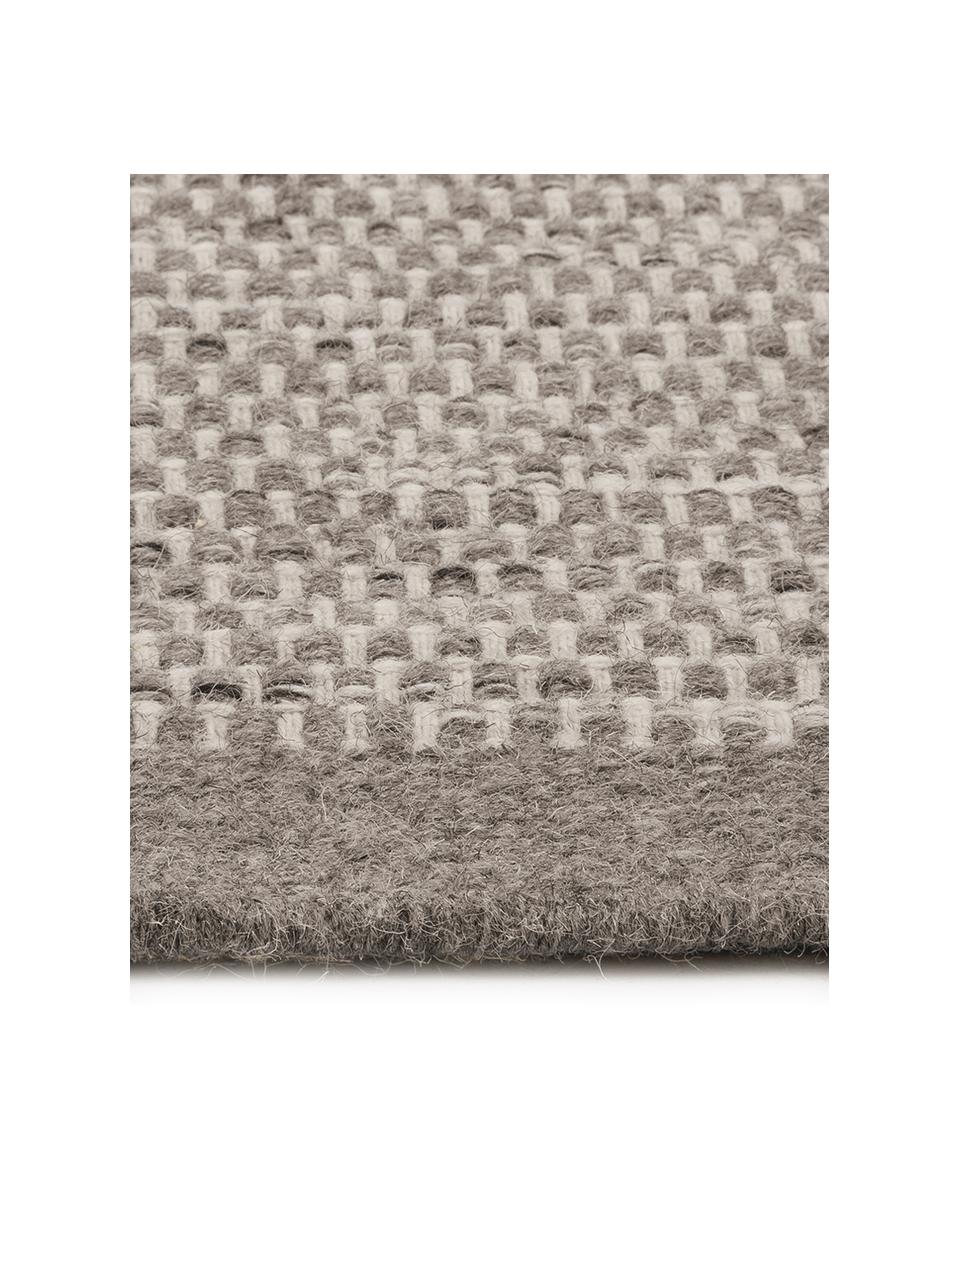 Handgewebter Wollteppich Asko in Grautönen, Flor: 90% Wolle, 10% Baumwolle, Hellgrau, Grau, B 170 x L 240 cm (Größe M)